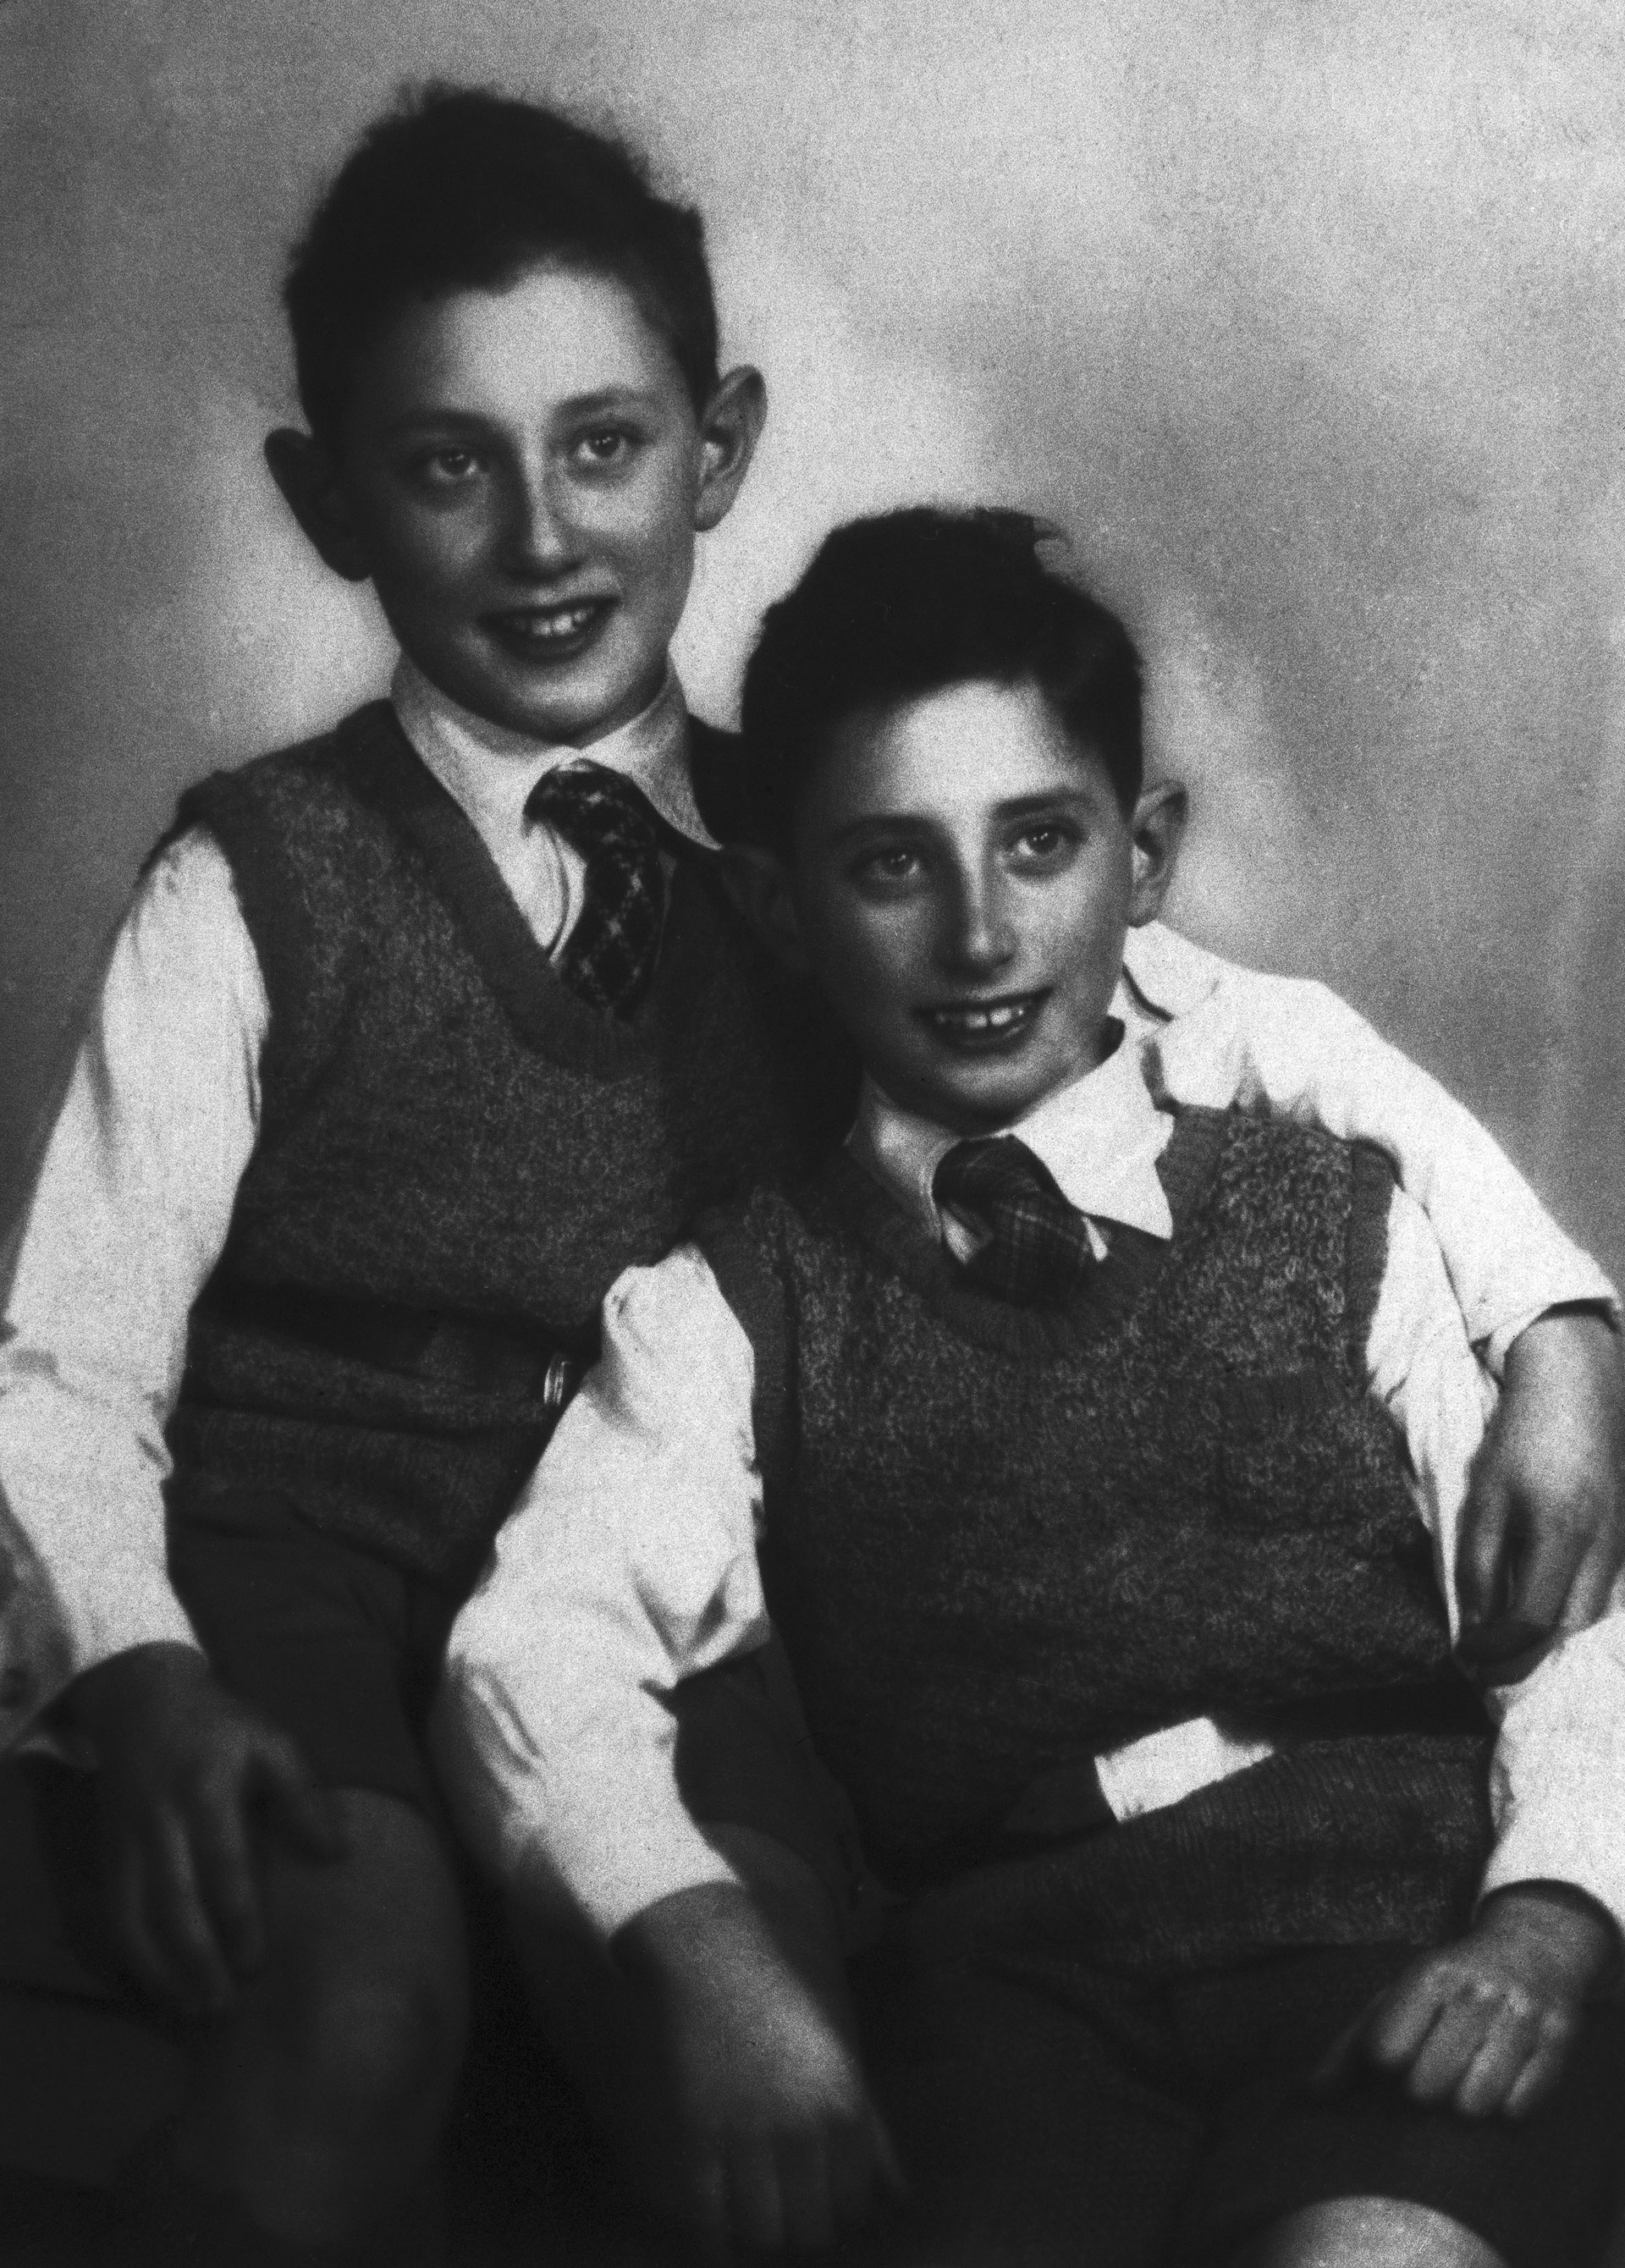 Henry Kissinger a los 11 años, junto a su hermano Walter de 10. Según dijeron sus tíos  en una entrevista, "Henry no mostró signos de grandeza cuando era niño en la Alemania de antes de la guerra. Era solo un buen chico judío"  (Bettmann Archive)